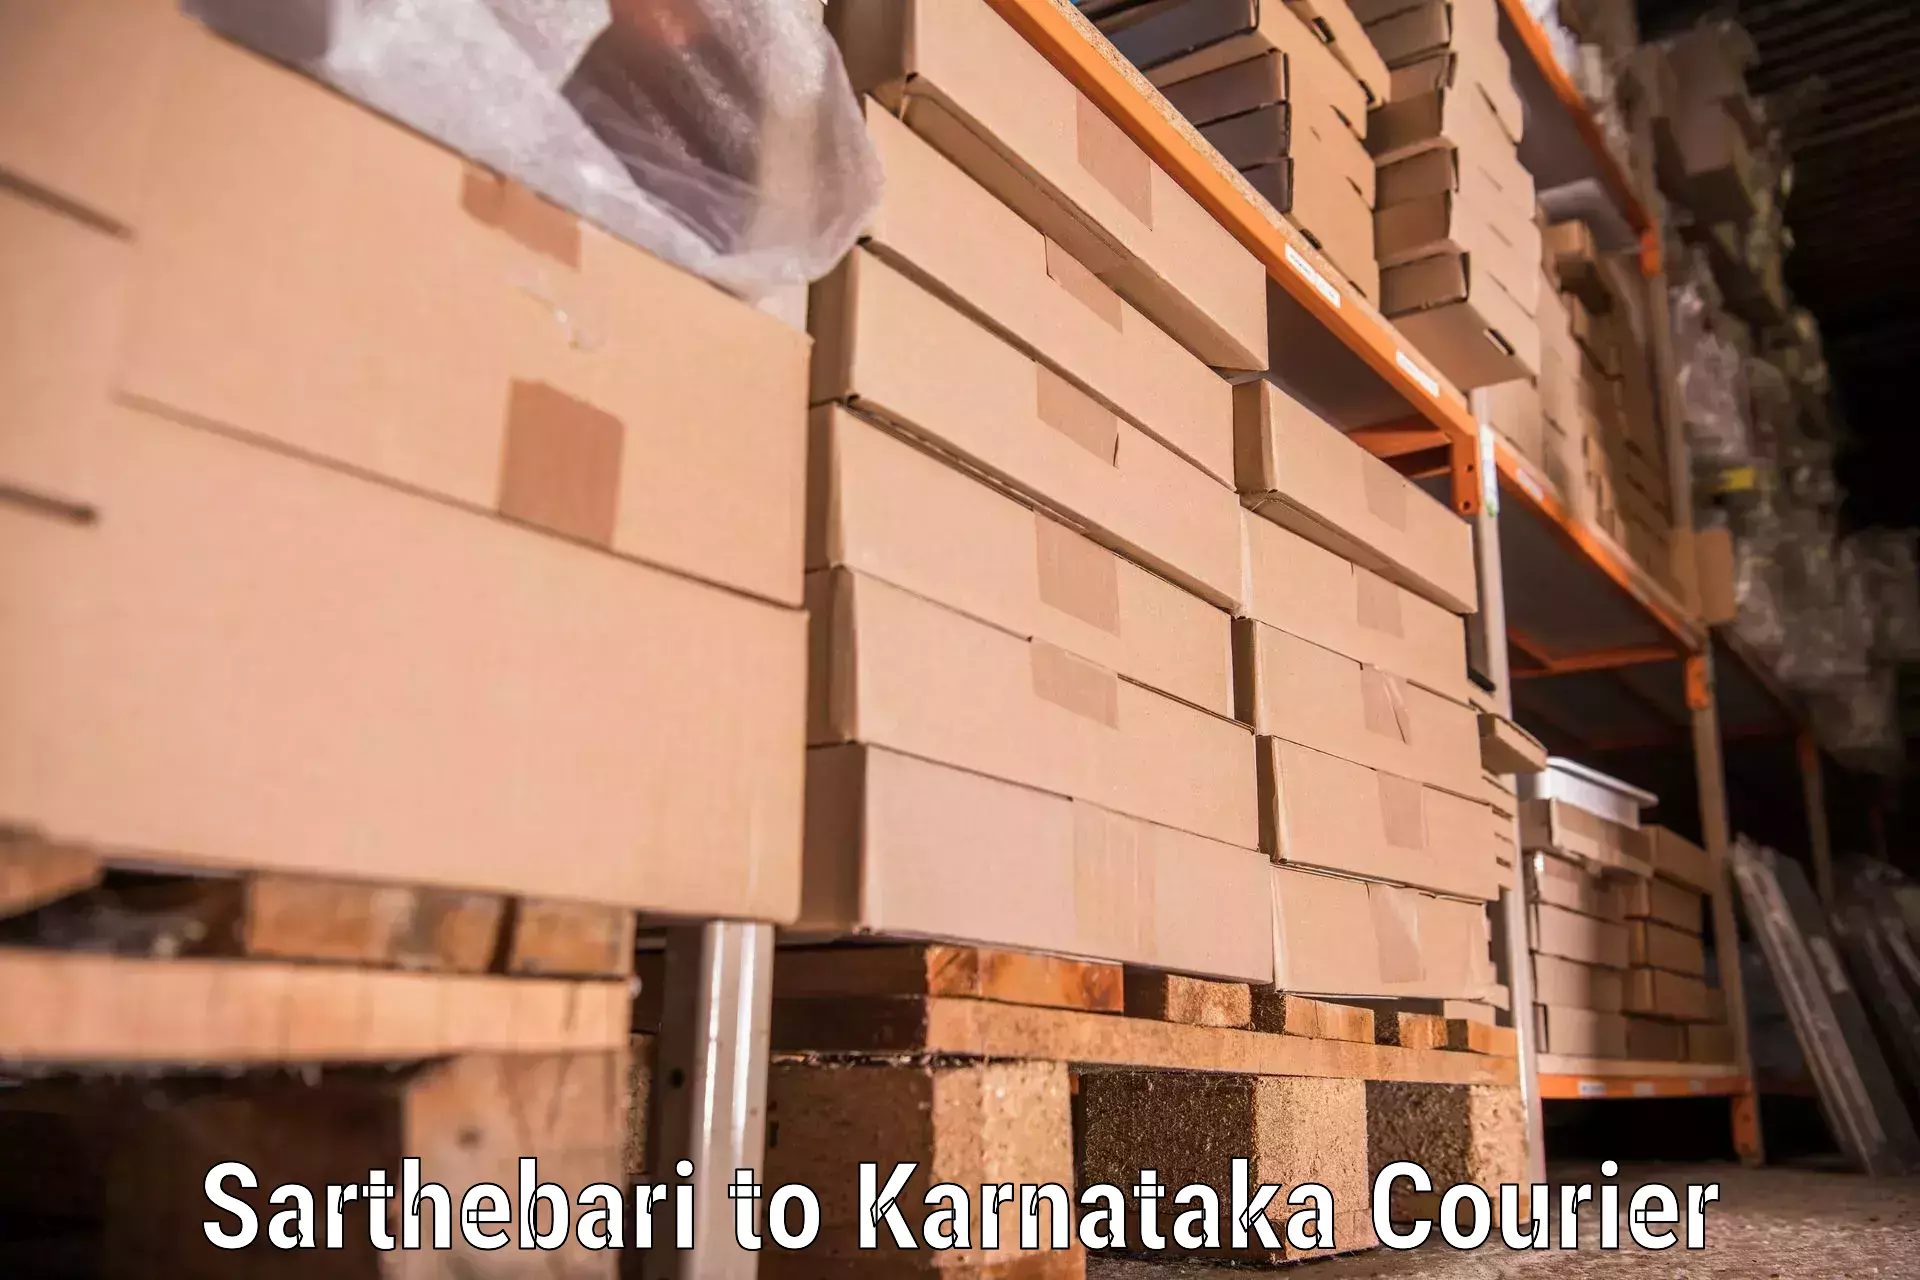 Packing and moving services Sarthebari to Karnataka